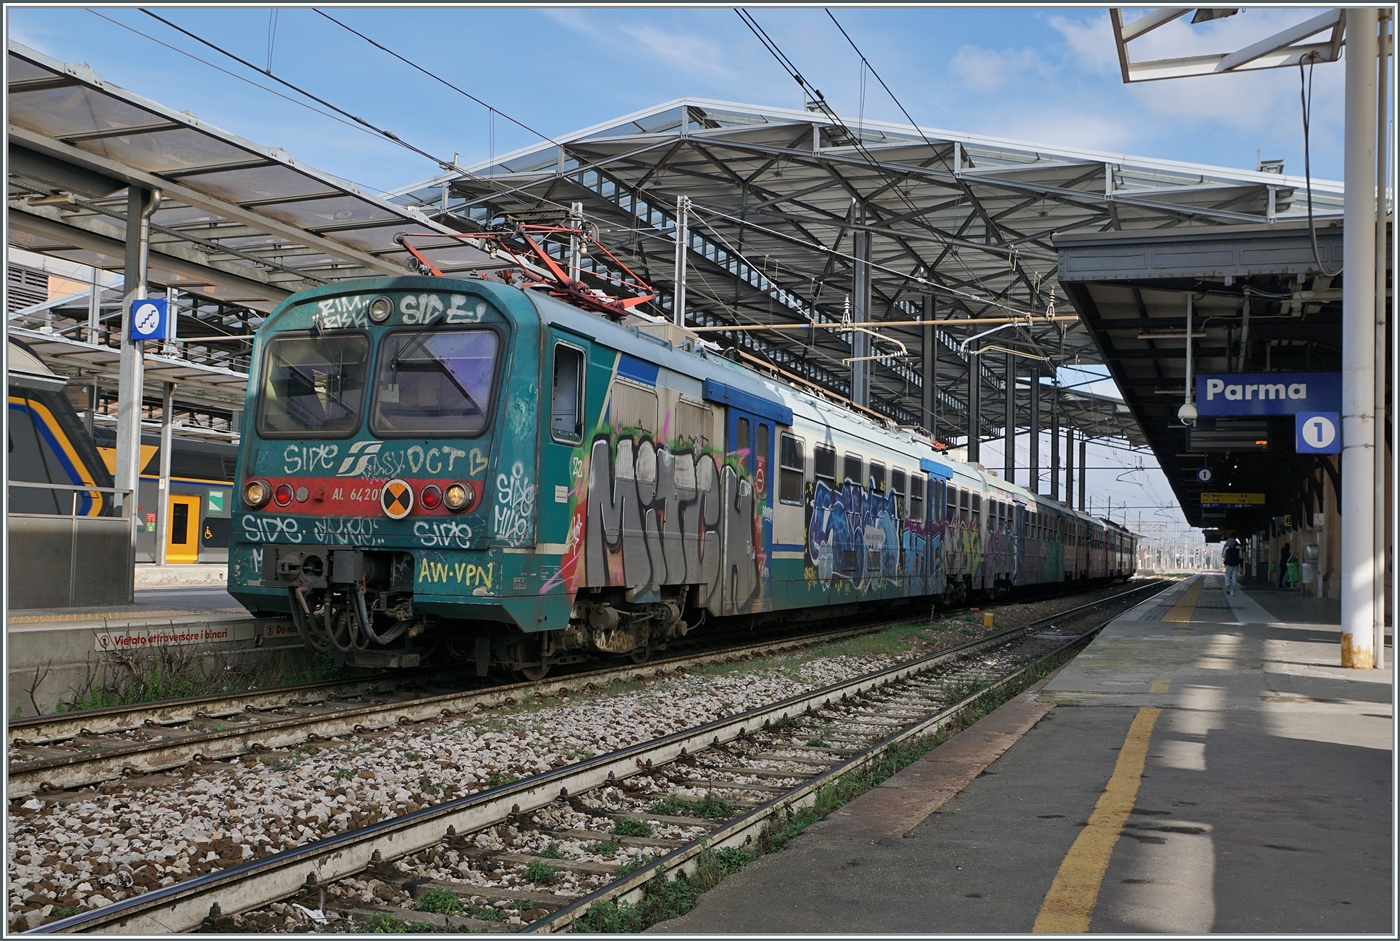 Trotz der vielen neuen Fahrzeuge bei der FS Trenitalia stand dann doch noch ein etwas älterer Triebwagen in Parma, der wohl auf die Abfahrt nach La Spezia wartete: der Ale 642 017; leider ziemlich verschmiert. 

15. März 2023